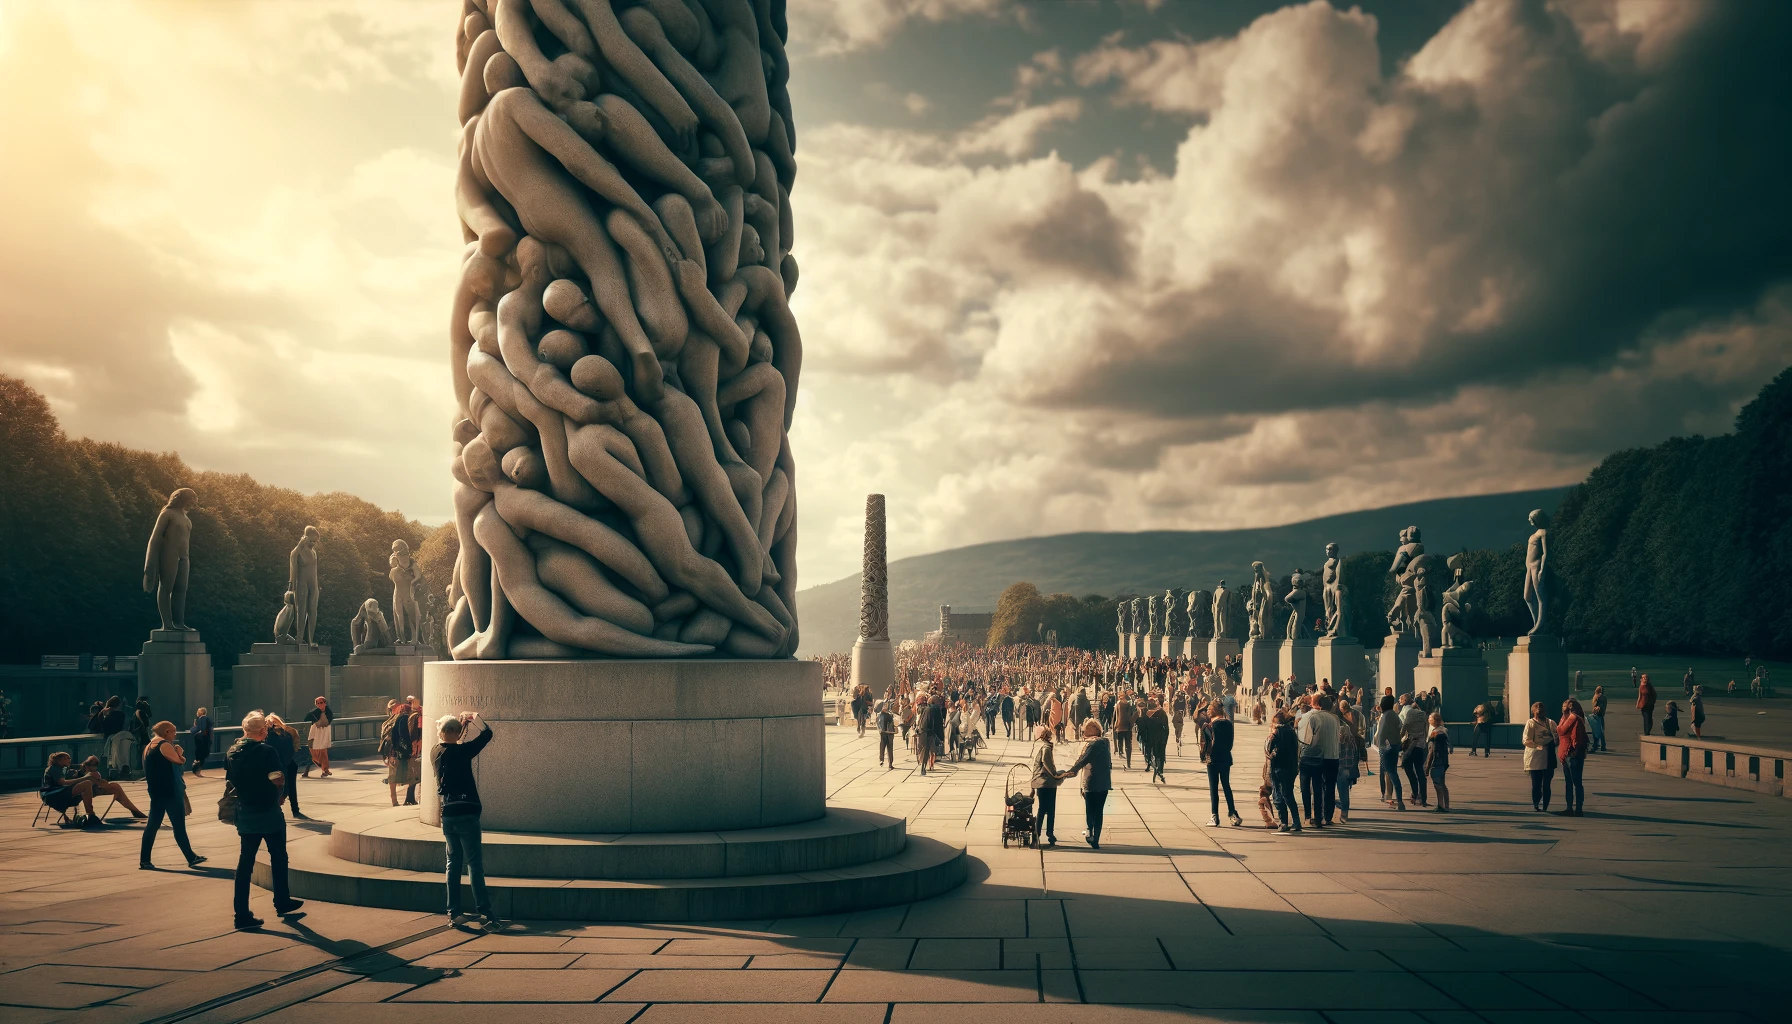 "Bilde av Vigelandsparken med Monolitten og besøkende som beundrer skulpturer."